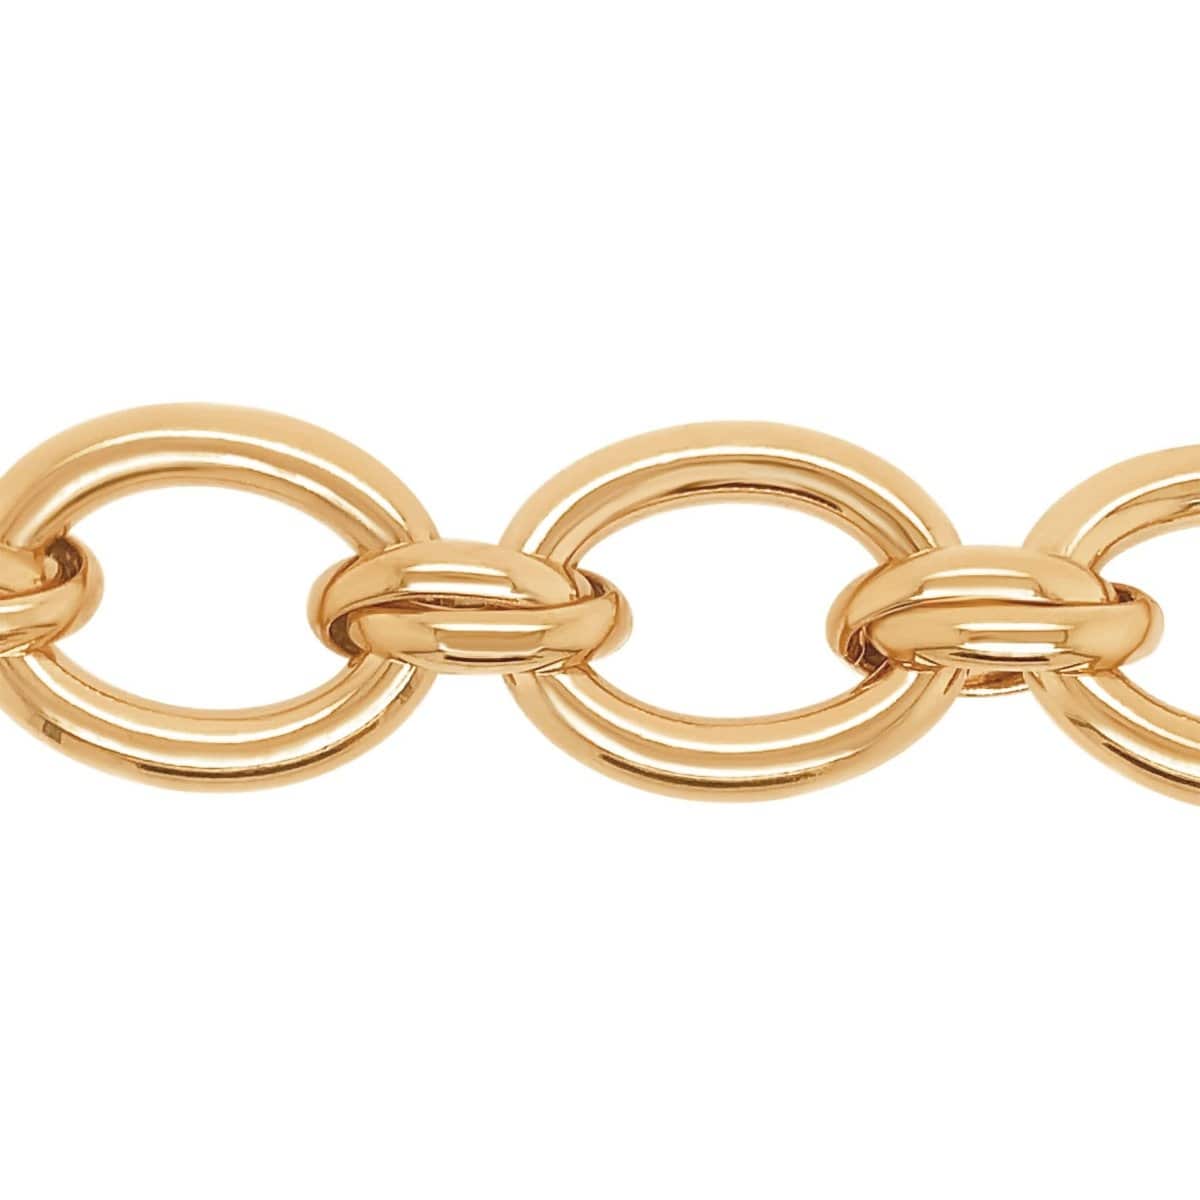 BRETT LAUREN Bracelets Oval Chain Link Bracelet